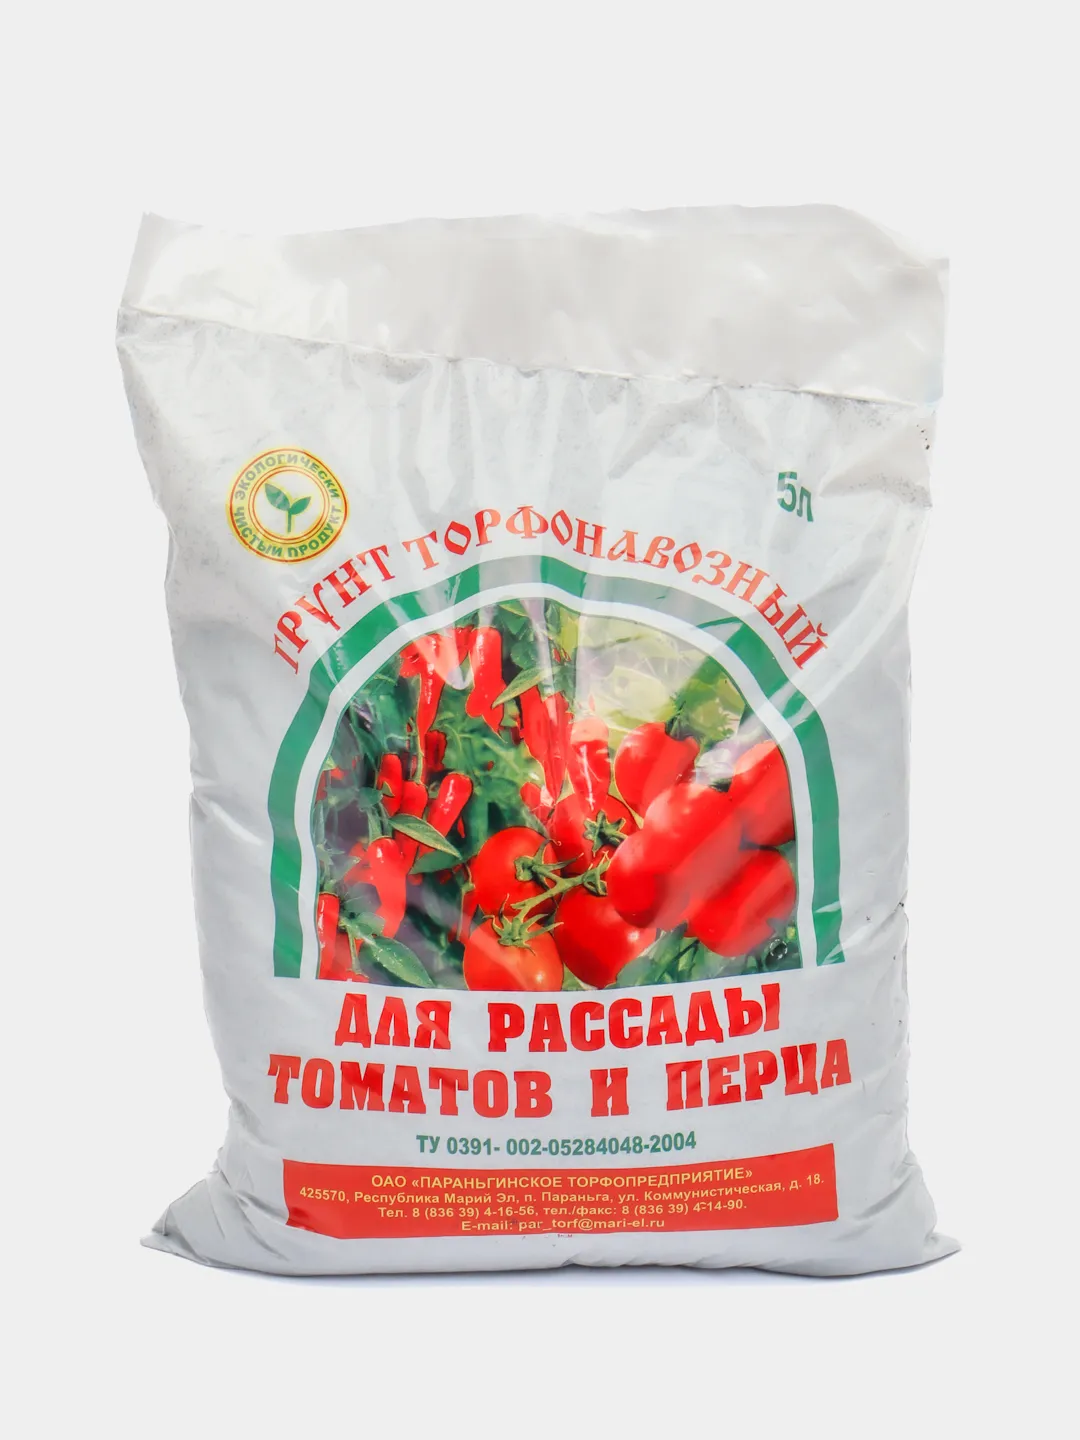 Грунт для рассады,земля для томатов,перцев,5 л купить по цене 210 ₽ винтернет-магазине KazanExpress